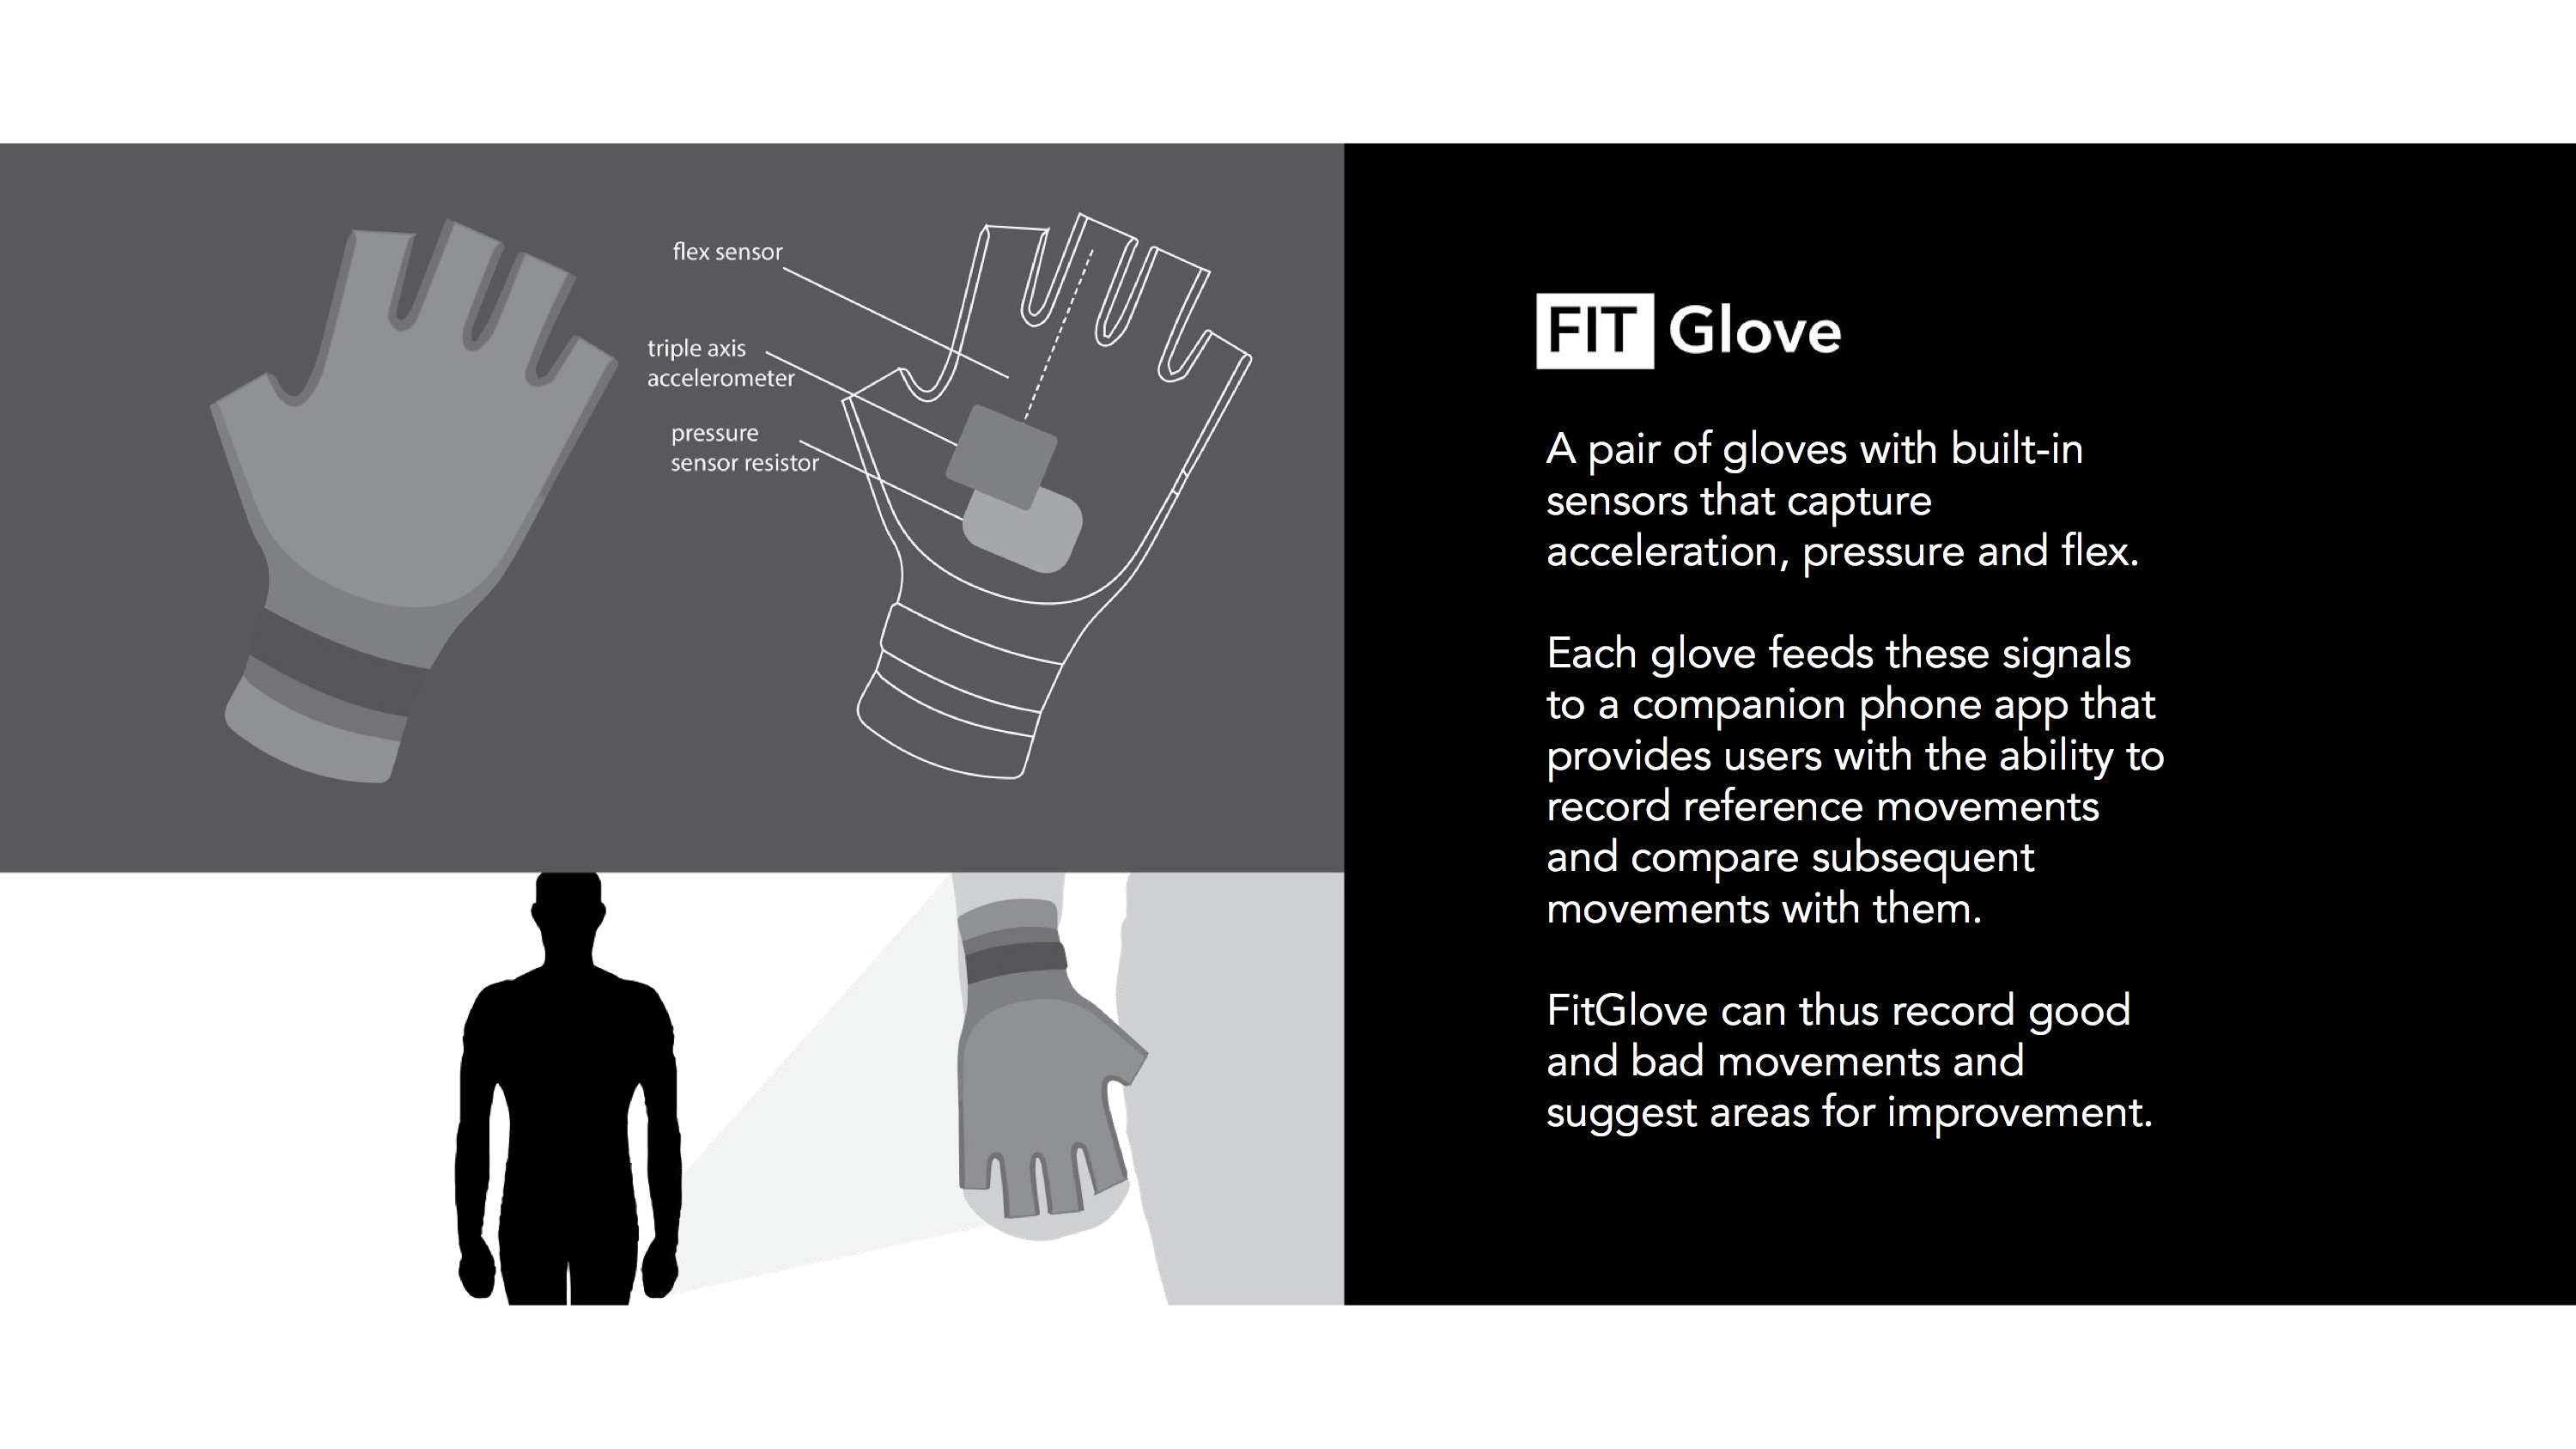 Fit Glove